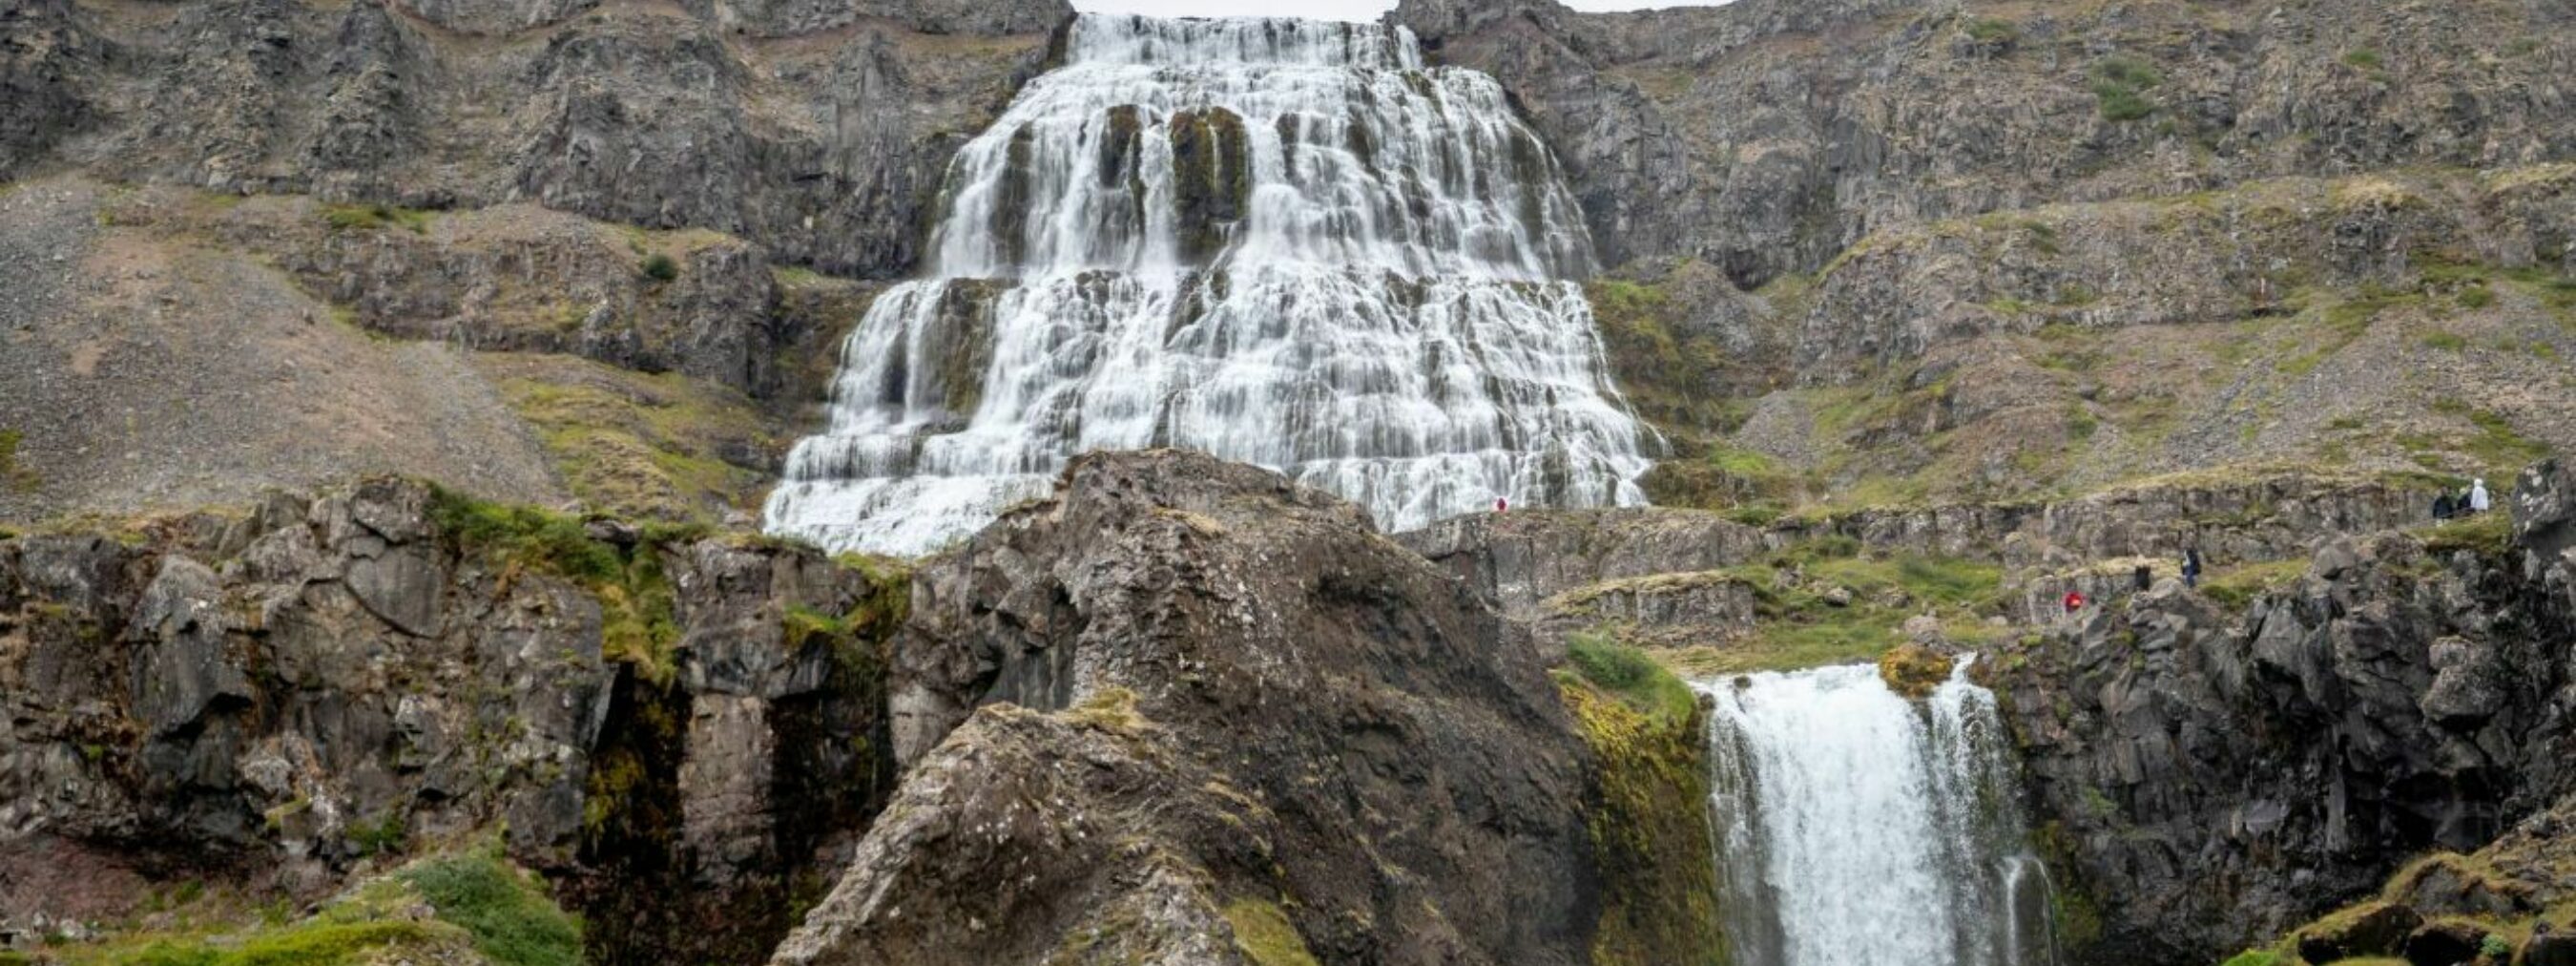 Wasserfall Dynjandi in den Westfjorden von Island, stufenförmiger Wasserfall